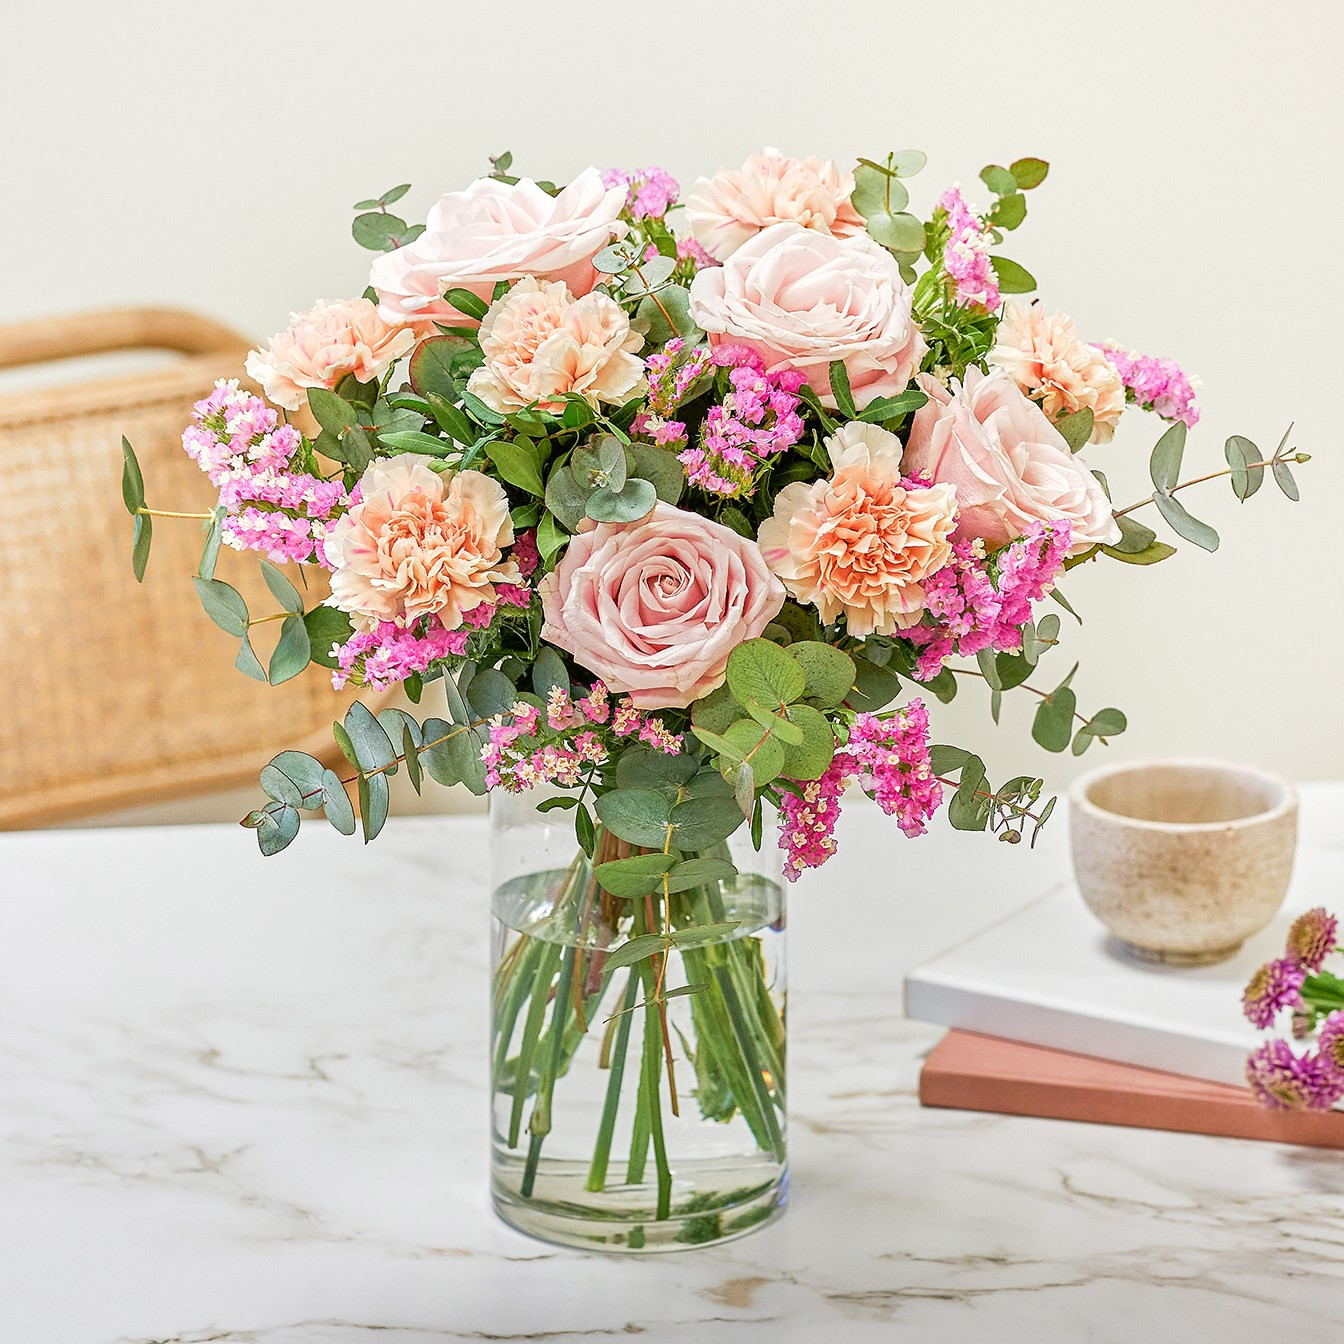 Bukiet łososiowych goździków i różowych róż z zielenią dekoracyjną